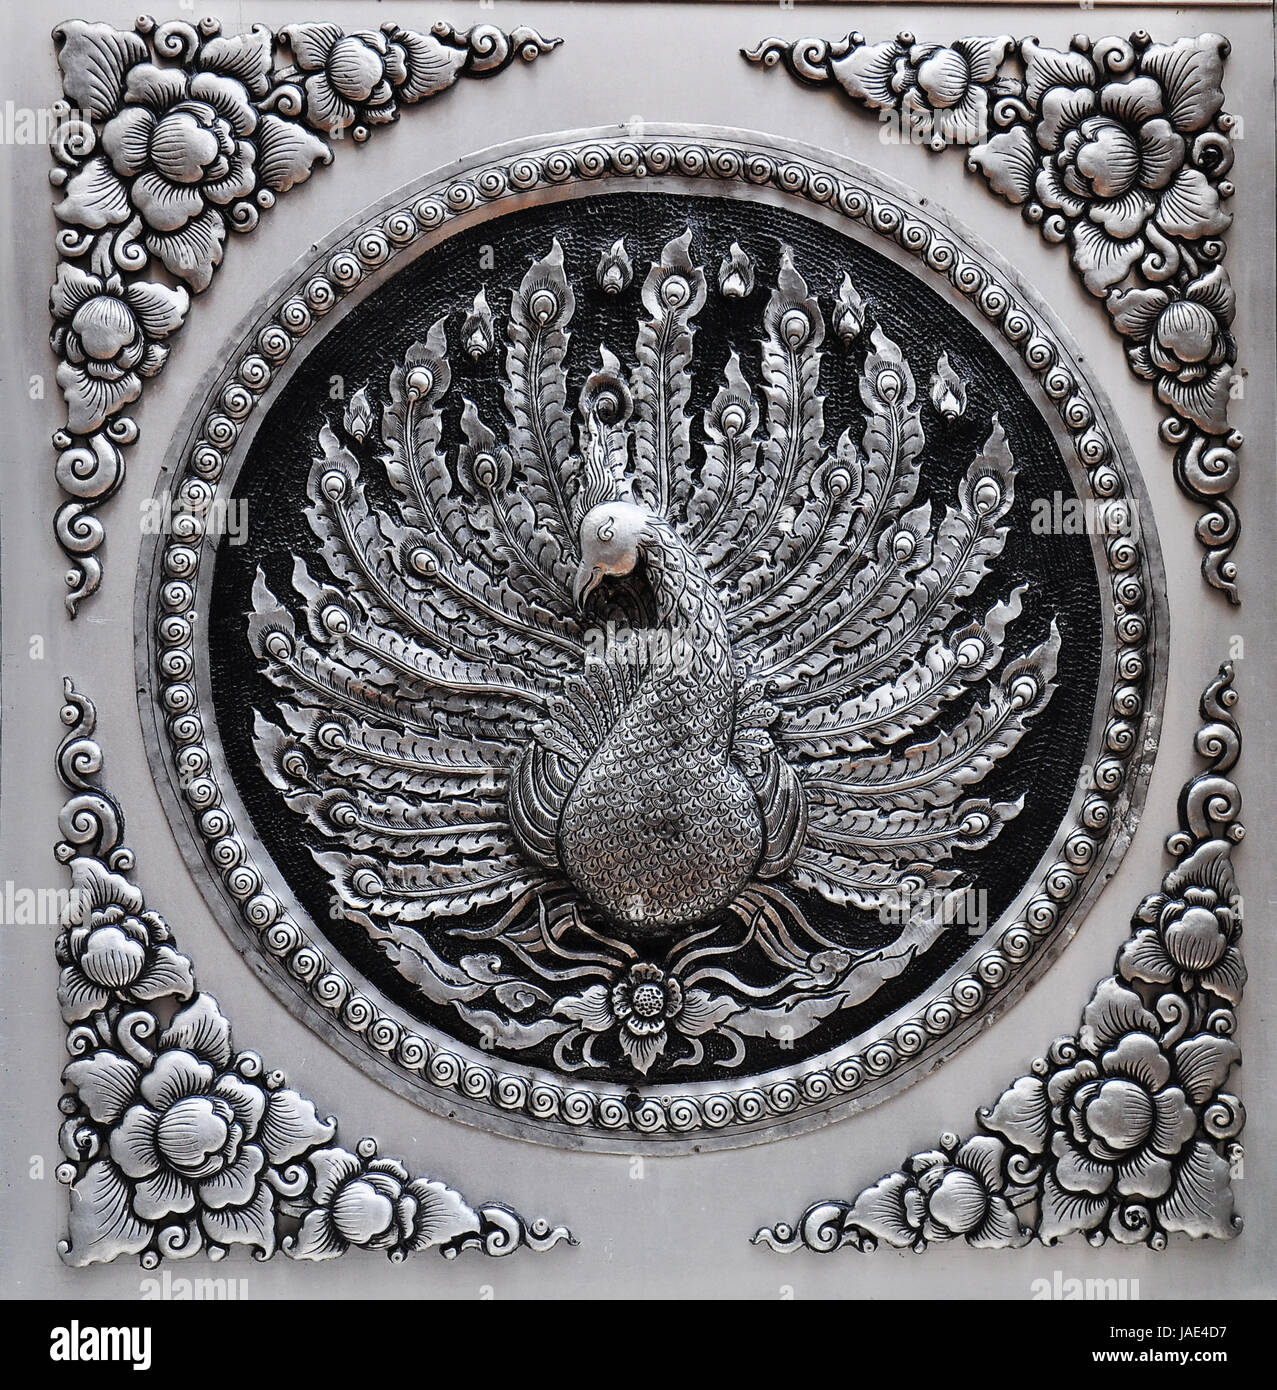 Gravur Silber Lack Rahmenplatte zeigen Pfau Tiere in Mythologie Kunst. Globale Handwerk thailändischer Künstler. Legen Sie in Chiang Mai. Stockfoto